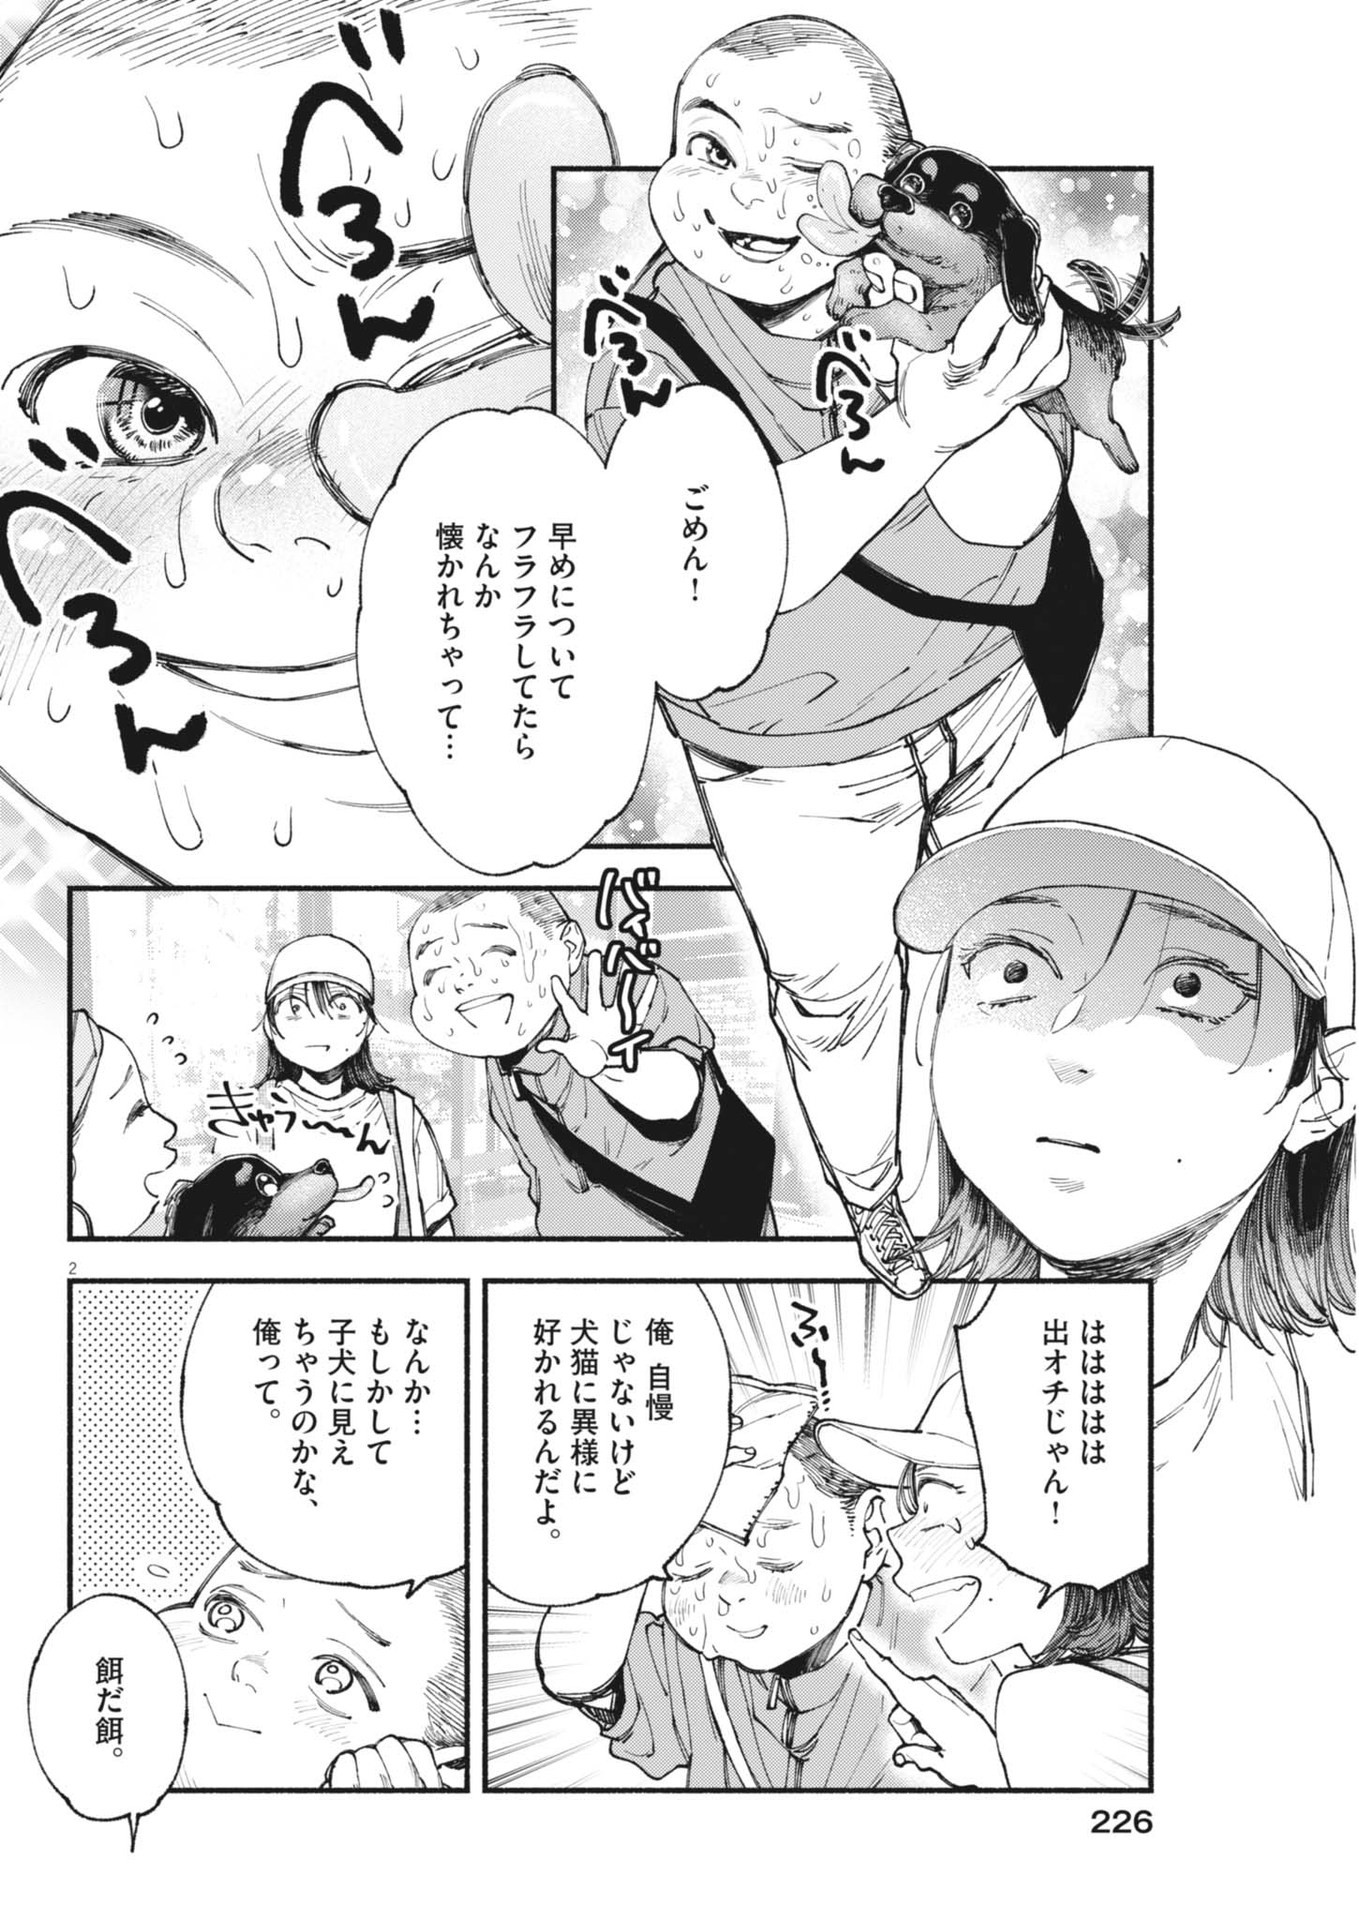 Konoyo wa Tatakau Kachi ga Aru  - Chapter 27 - Page 2